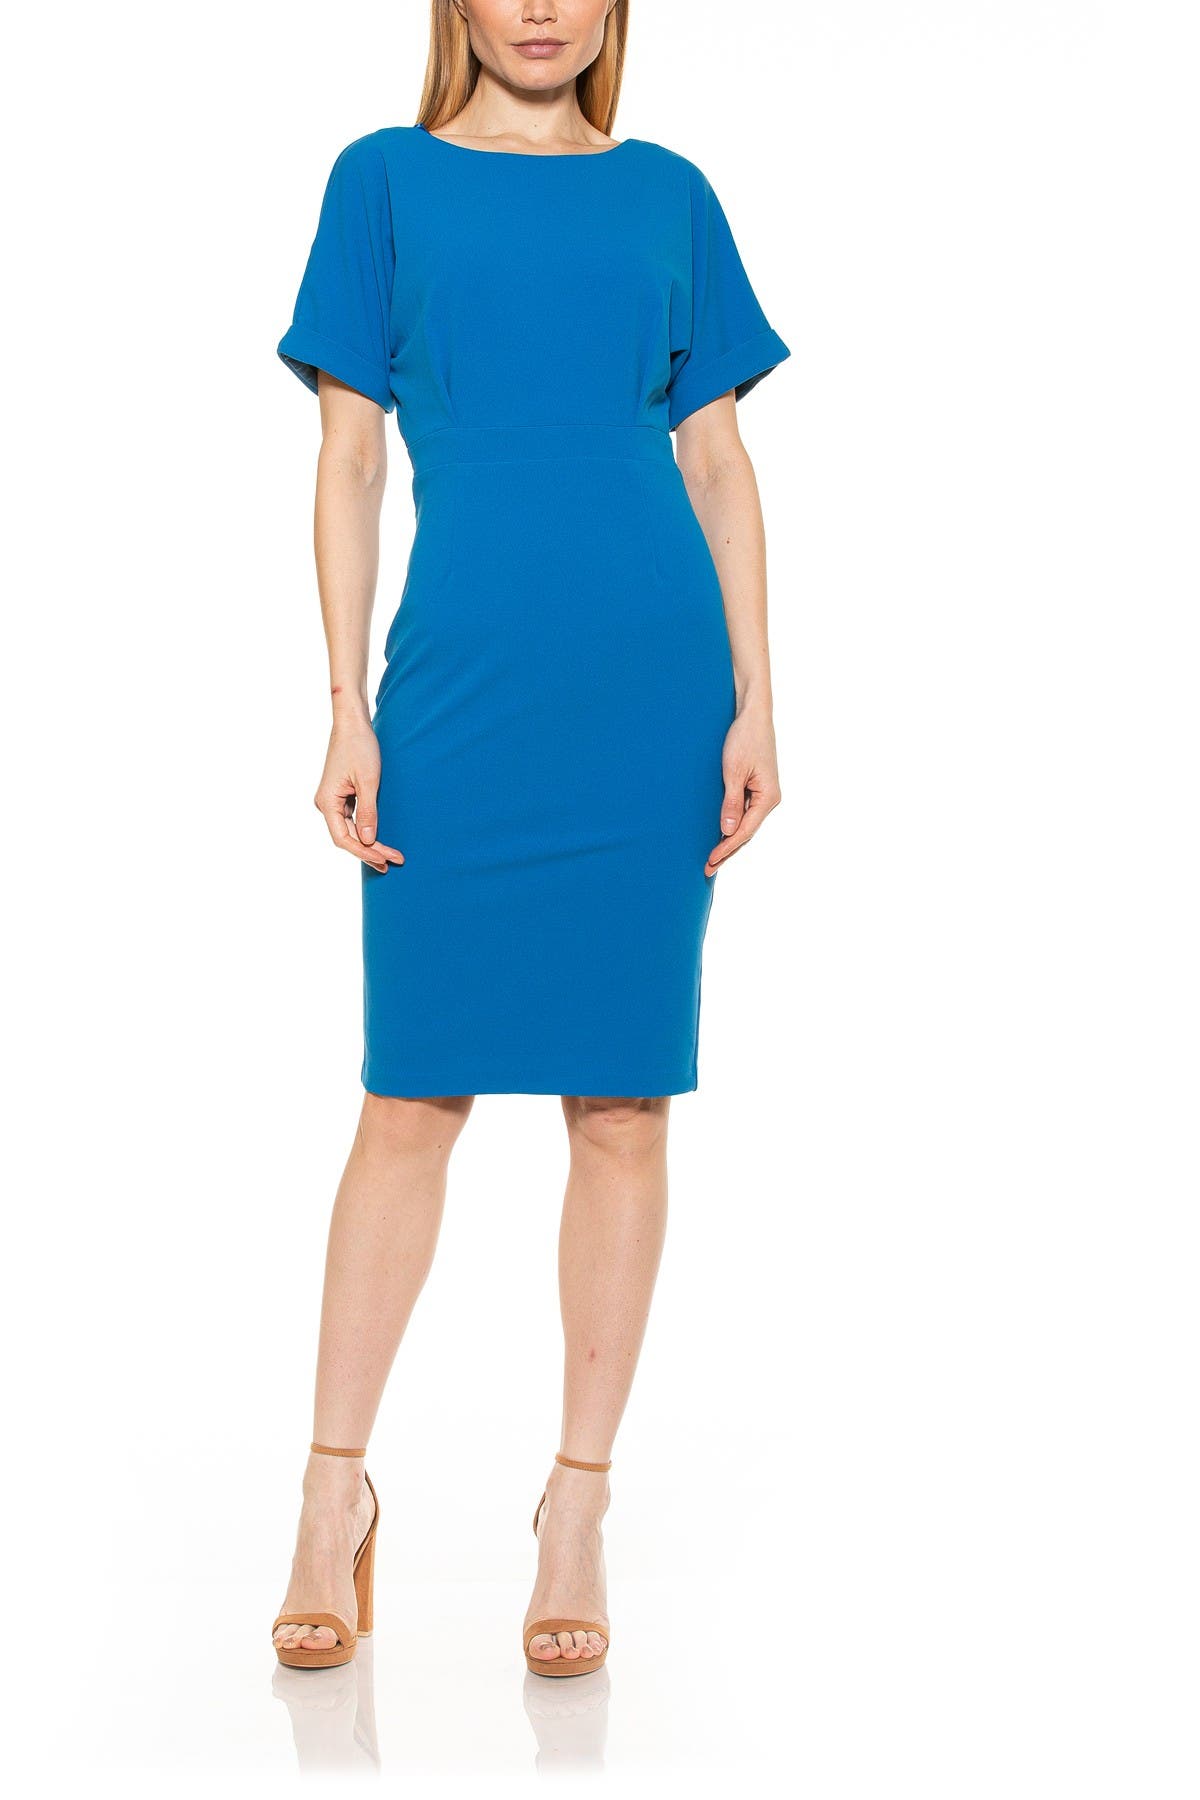 Alexia Admor Dolman Sleeve Midi Sheath Dress In Dark Blue